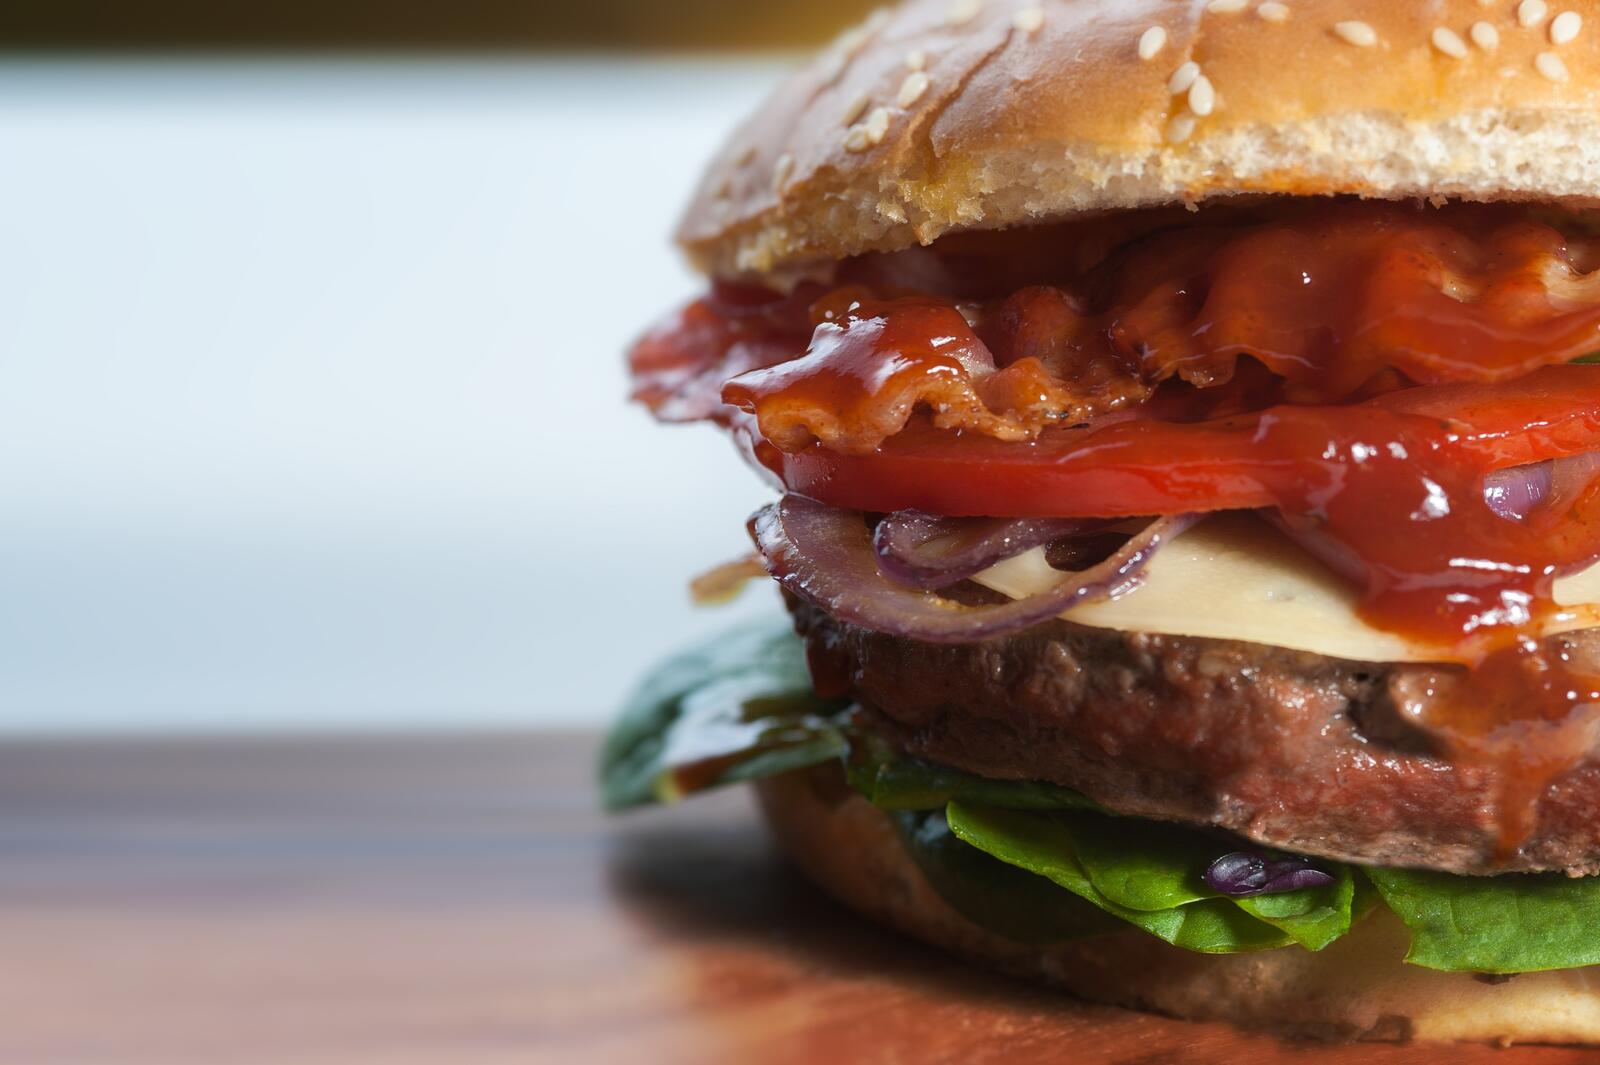 Free photo A close-up of a hamburger with ketchup.